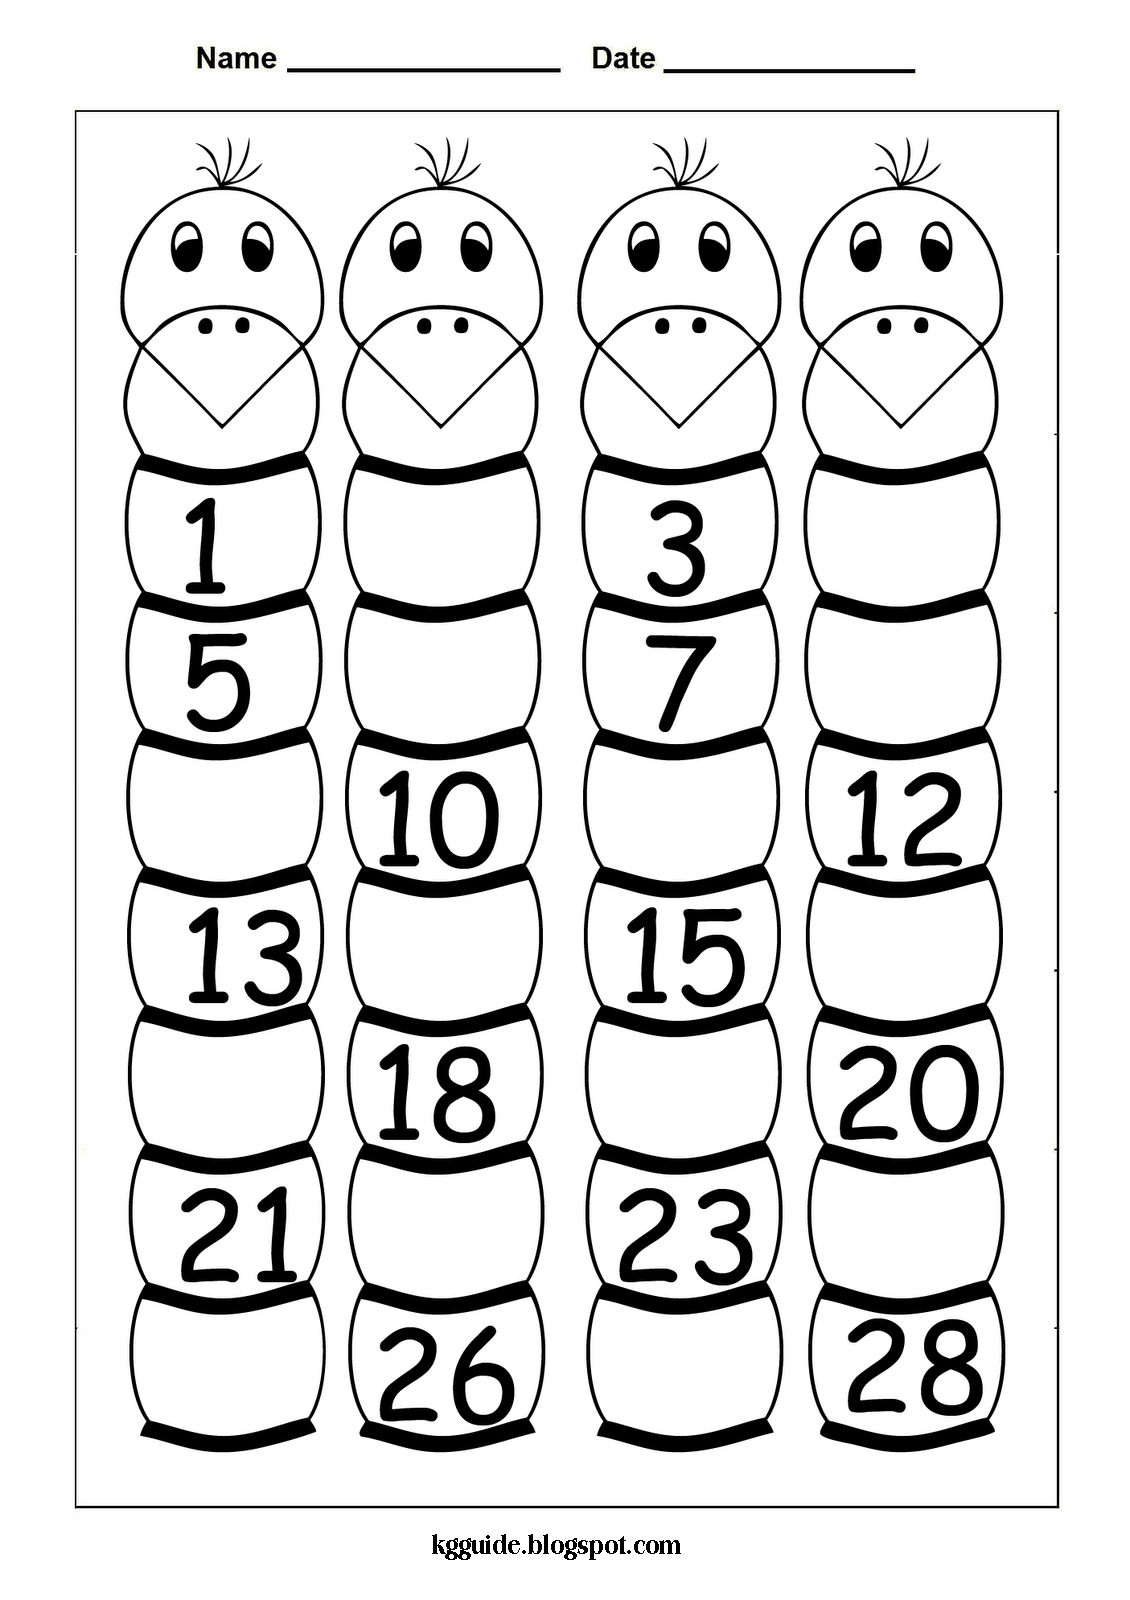 kindergarten-missing-numbers-worksheets-printable-kindergarten-worksheets